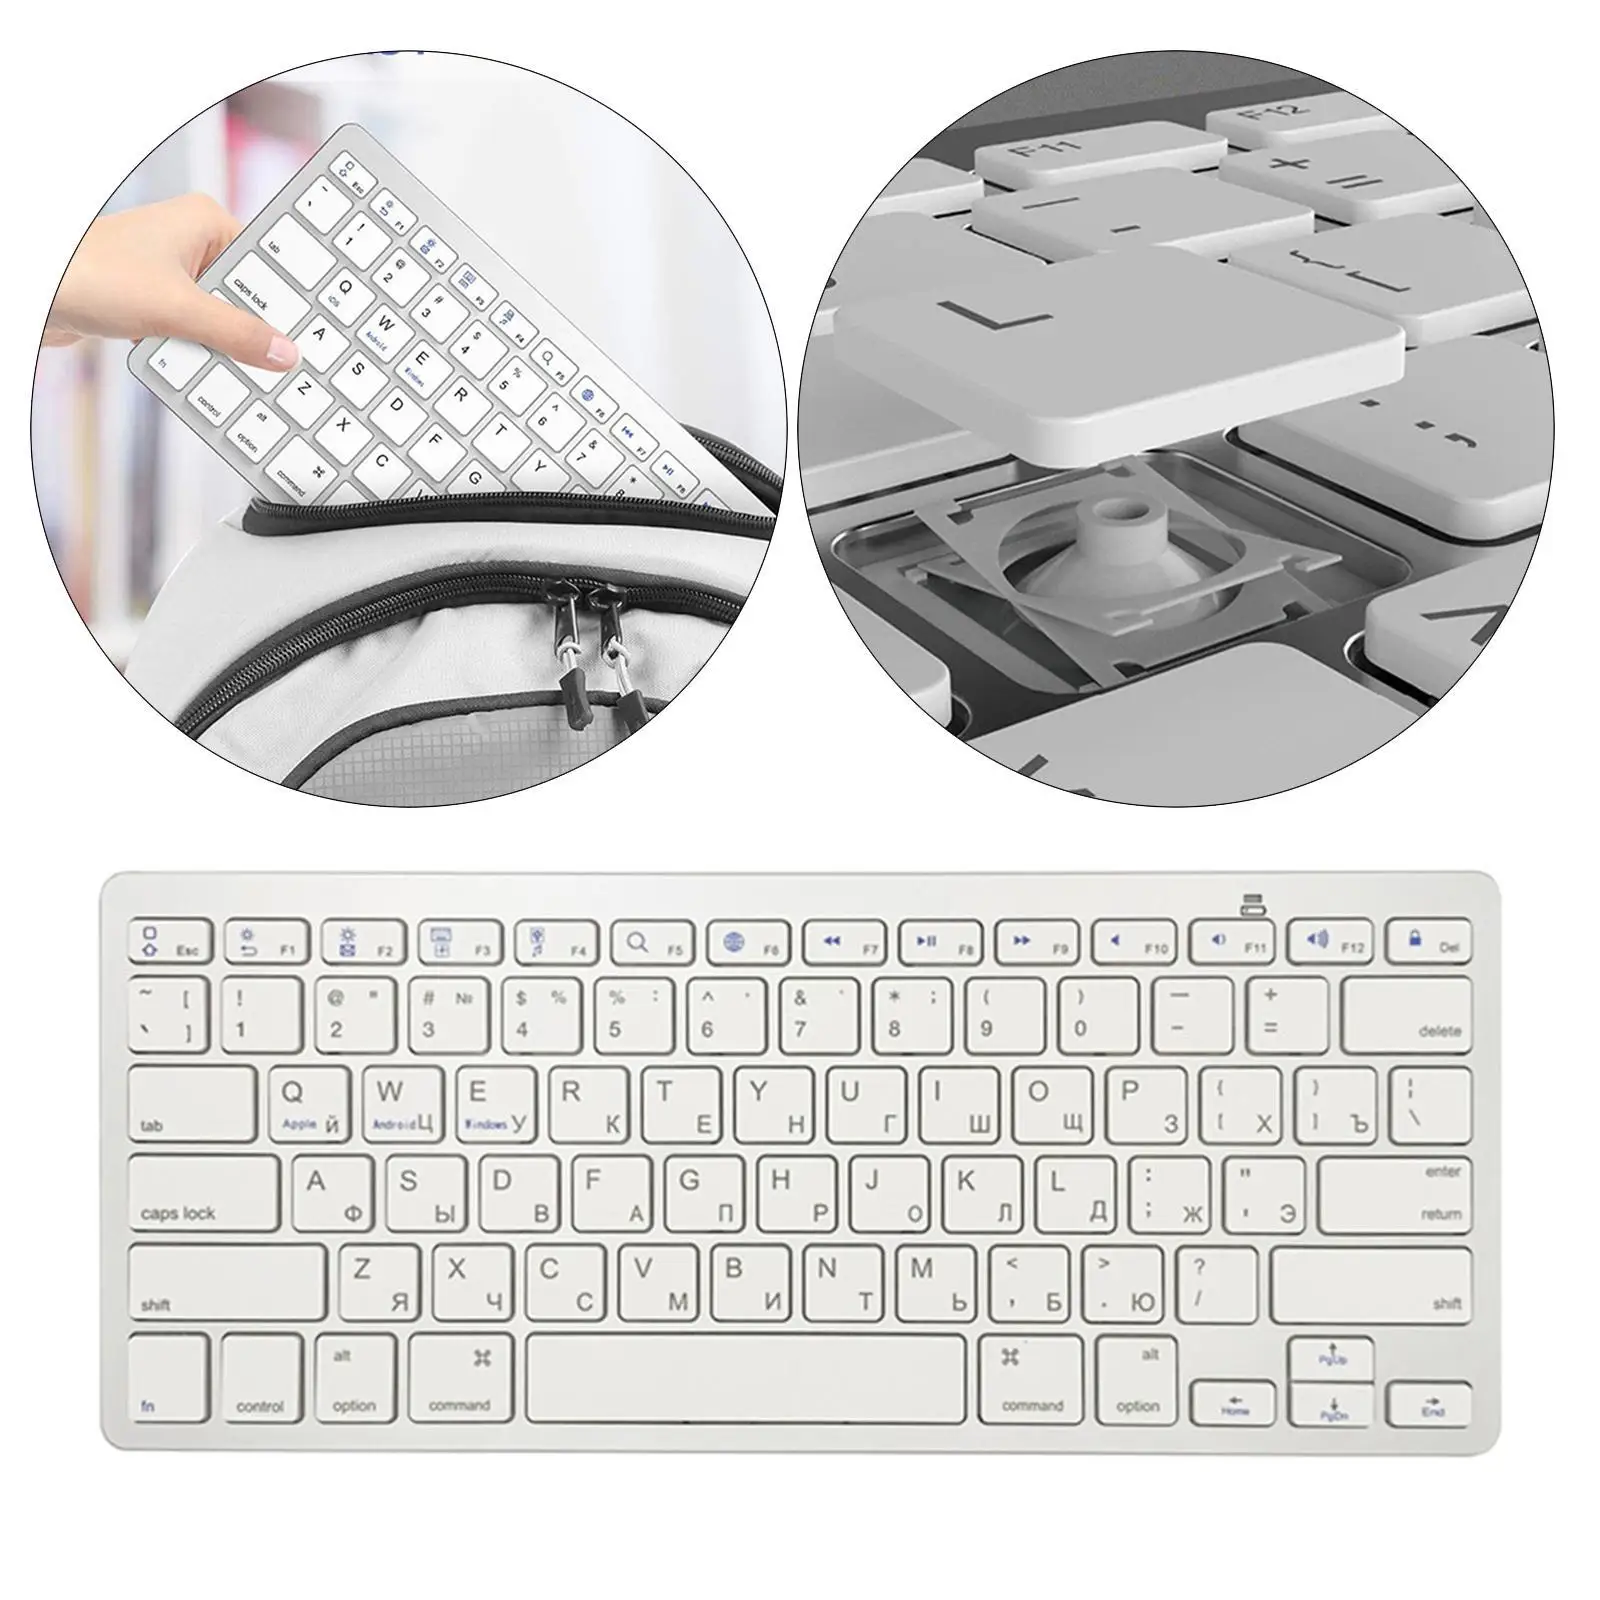 7 клавиатур на русском языке для компьютера, ноутбука, смартфона / Windows / Android Универсальная легкая